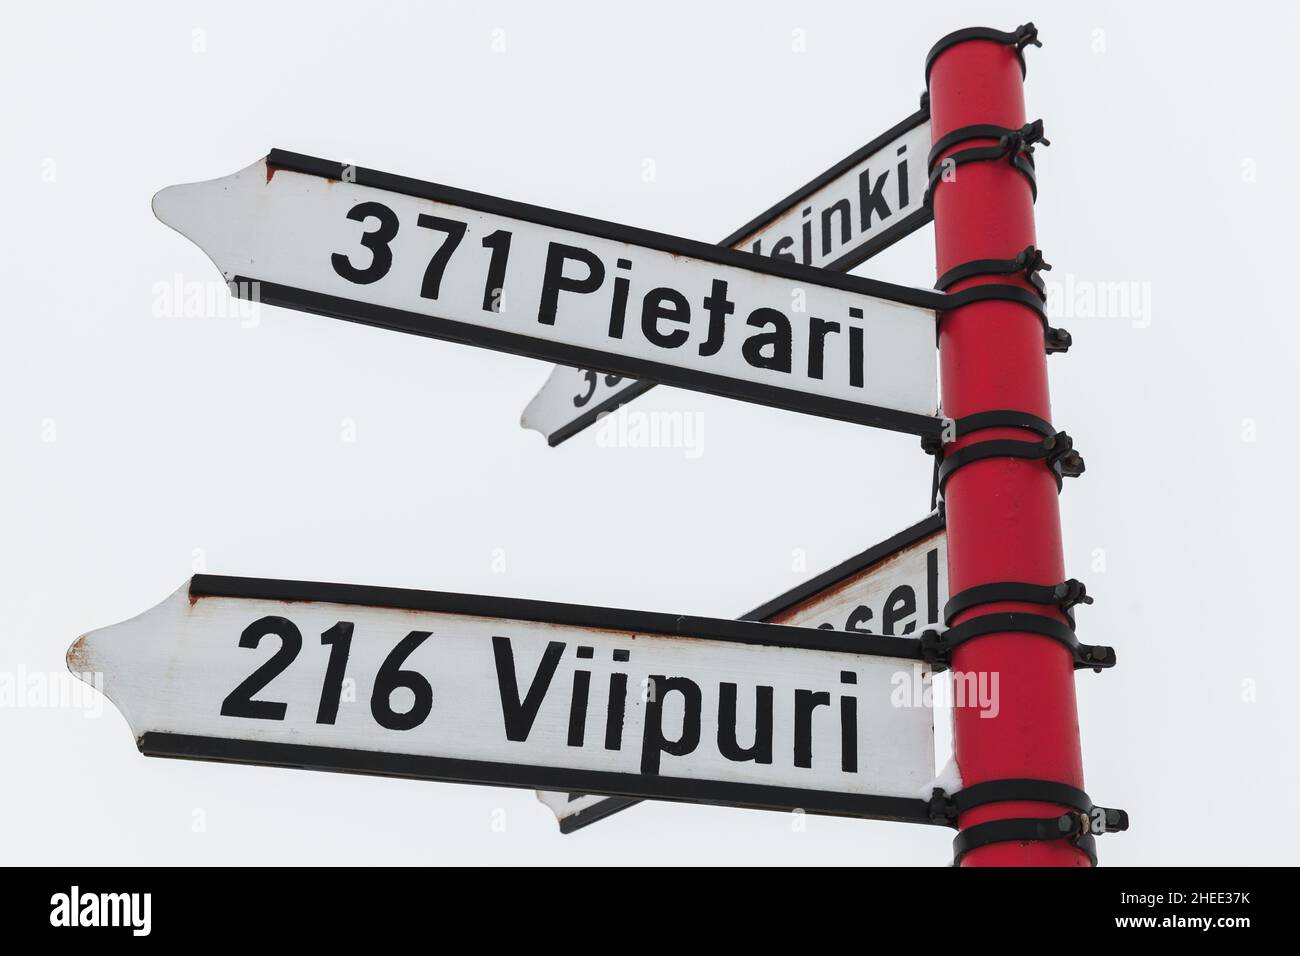 Segnaletica rossa, segnaletica direzionale con distanze dalle città di destinazione in finlandese. Savonlinna, Finlandia Foto Stock